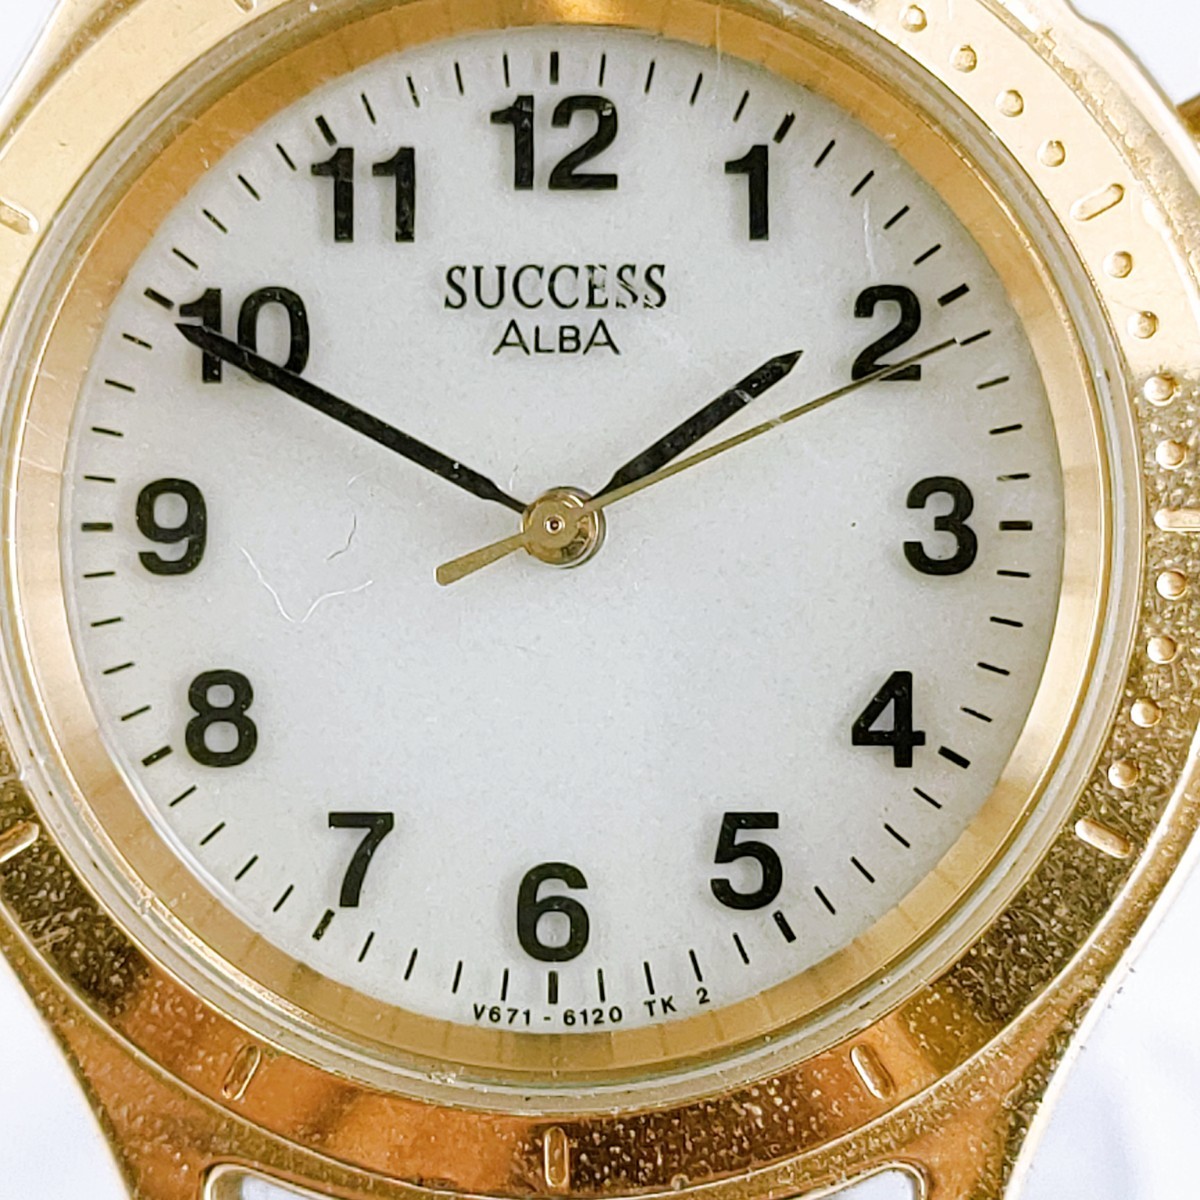 SEIKO ALBA SUCCESS セイコー アルバ サクセス 腕時計 アナログ V671-6070 時計 ヴィンテージ 3針 白文字盤 アクセ アクセサリー_画像2